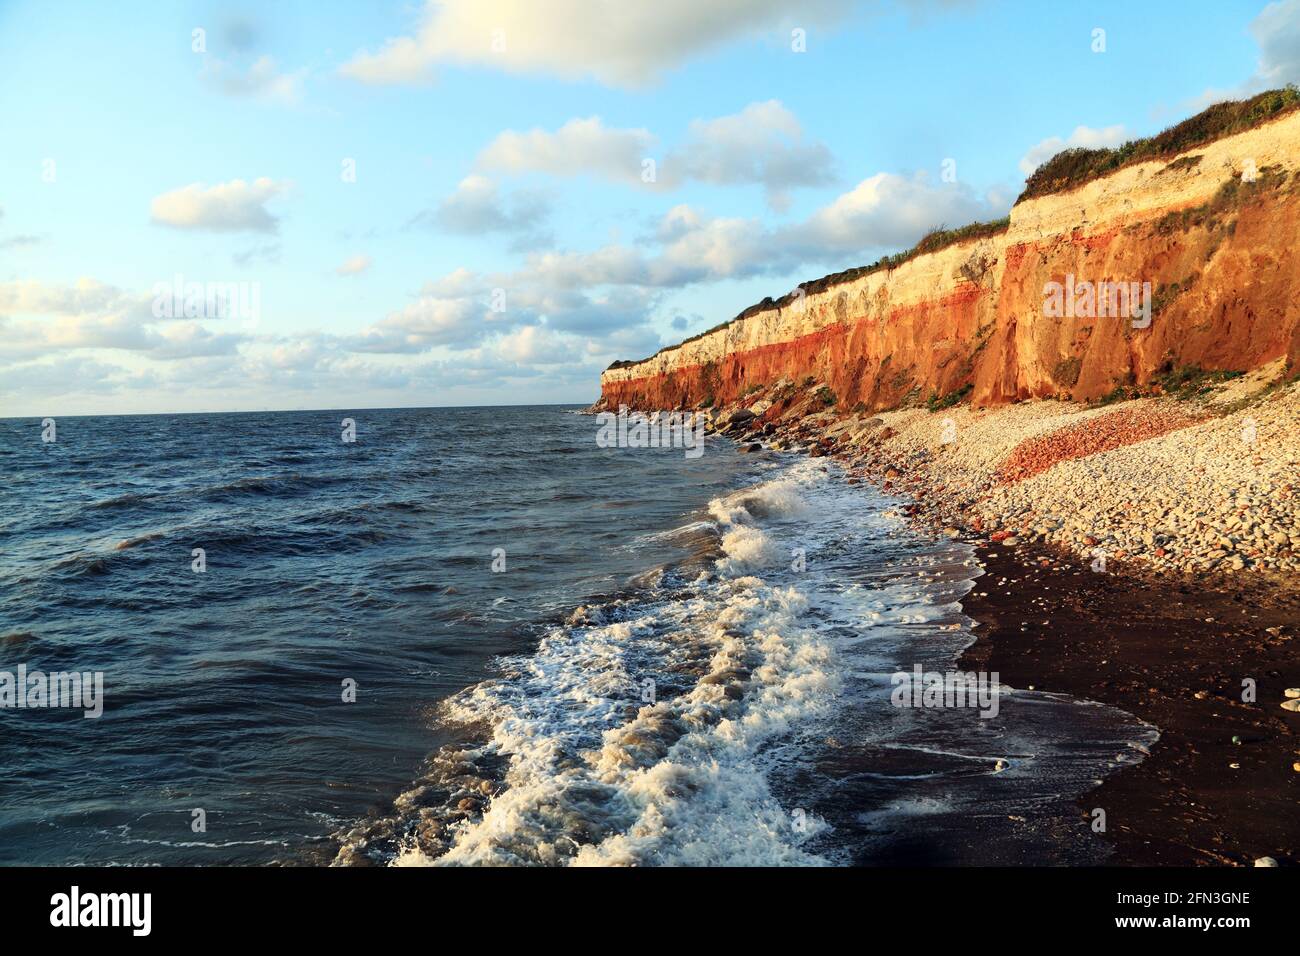 Hunstanton Cliffs, patrón de rayas, olas, marea alta, surf, The Wash, Mar del Norte, Norfolk, Inglaterra, Reino Unido Foto de stock